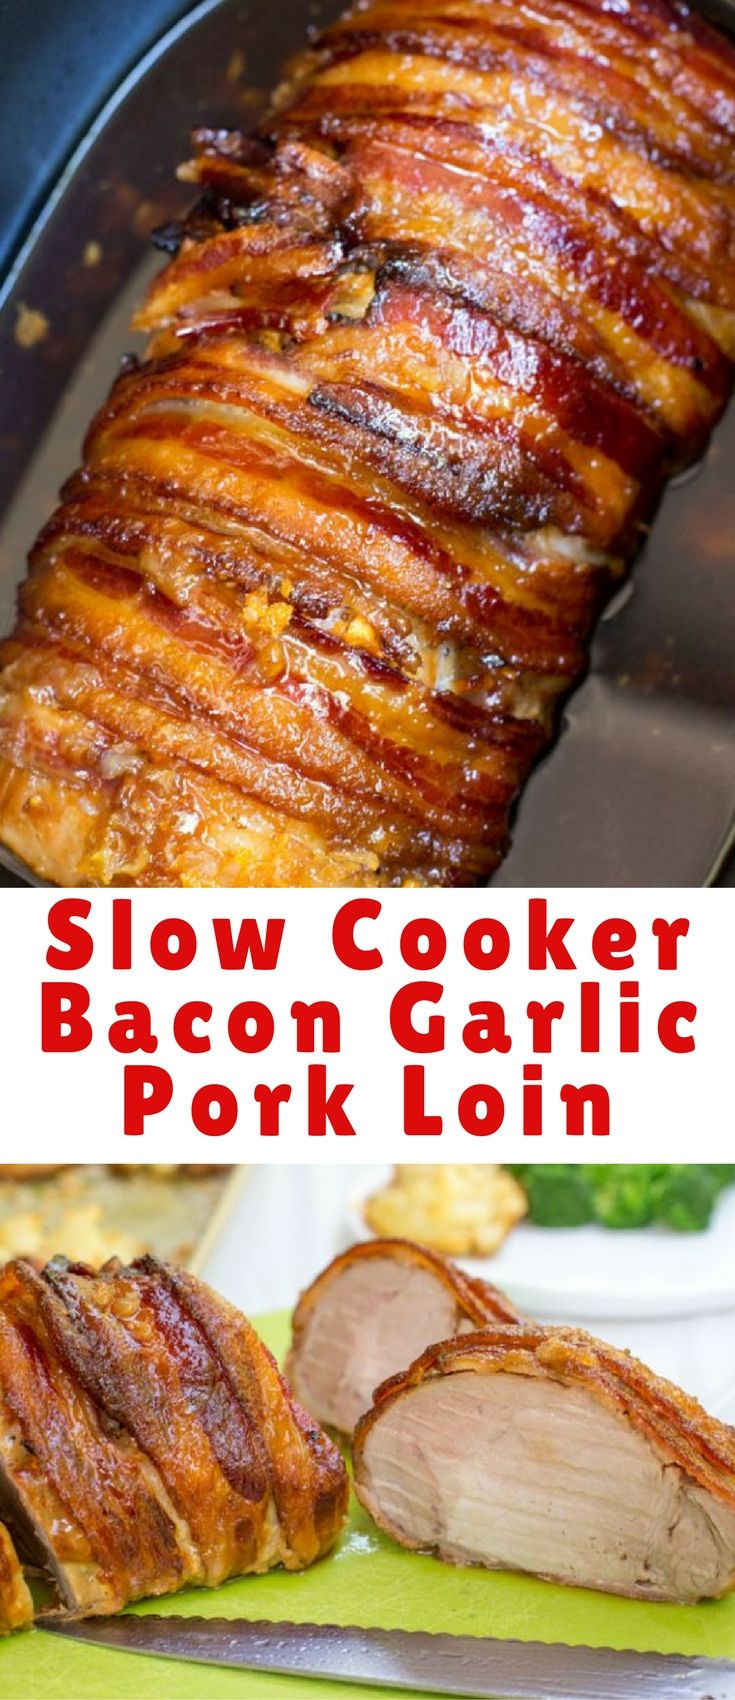 Pork Tenderloin Recipes In Crockpot Slow Cooker Keto
 Slow Cooker Bacon Garlic Pork Loin is a take on my most